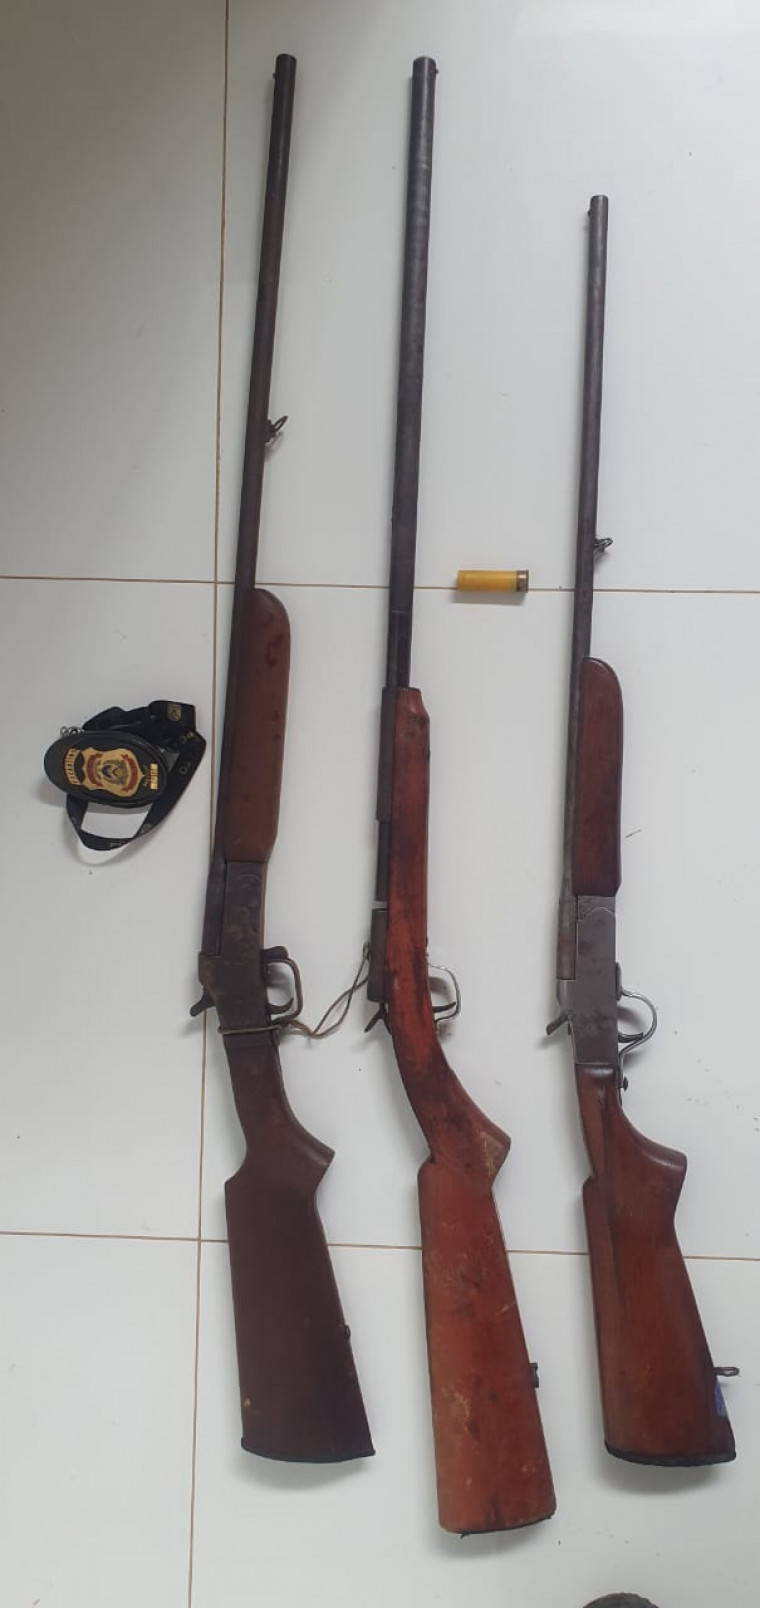 Armas de fogo encontradas pela Polícia Civil na casa de um suspeito